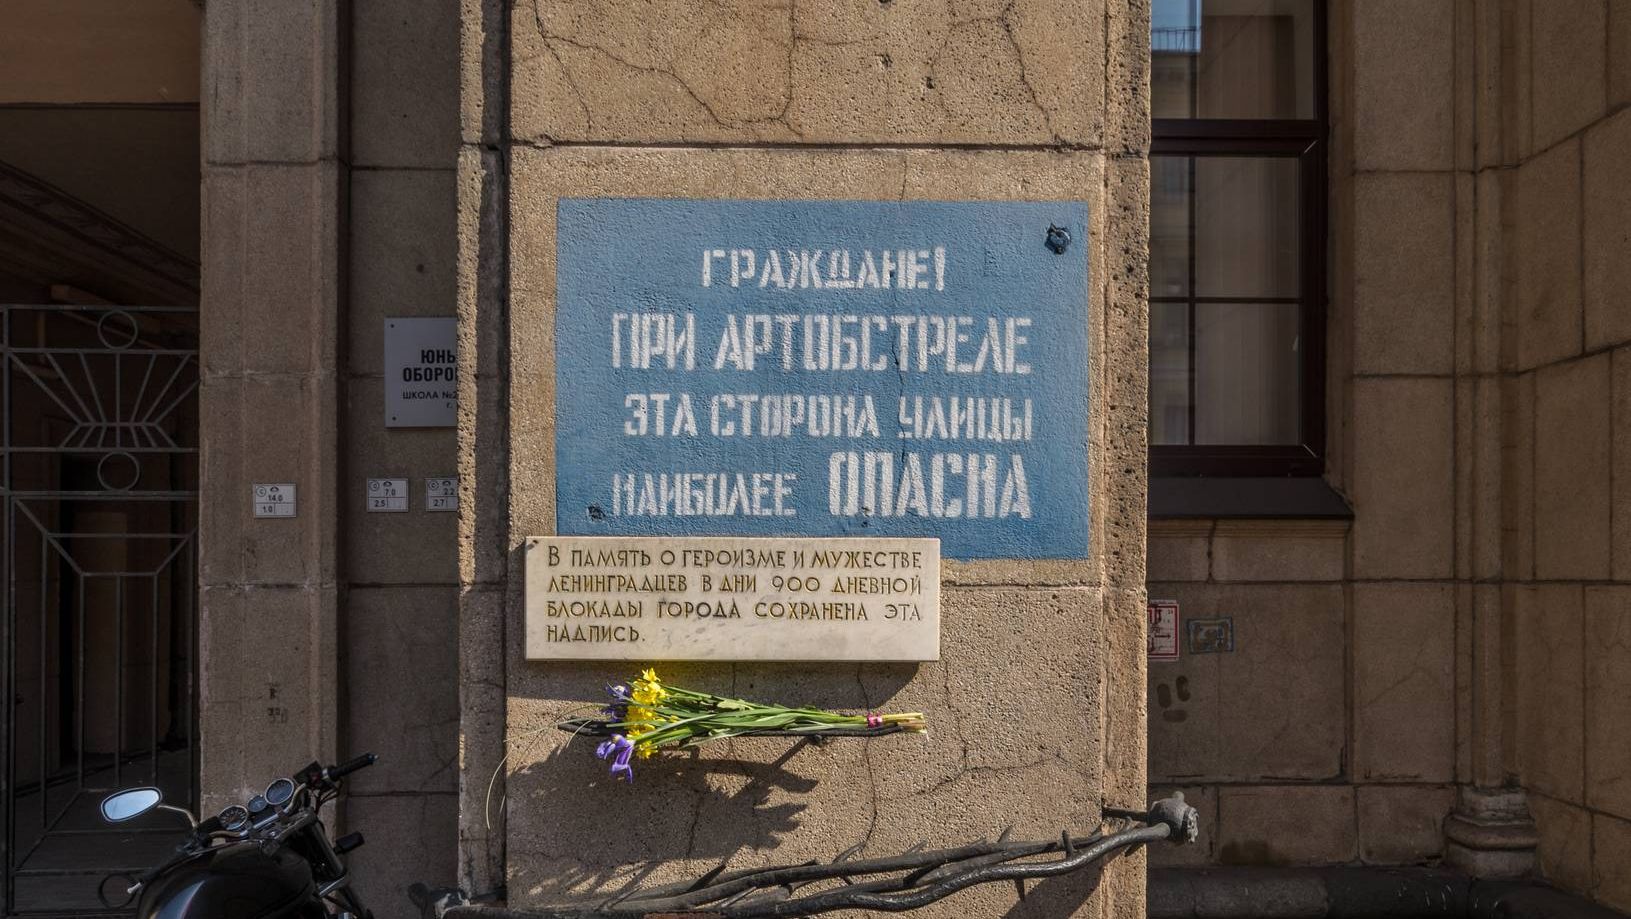 Мемориальный знак «Граждане! При артобстреле эта сторона улицы наиболее опасна» на Невском проспекте в Санкт-Петербурге